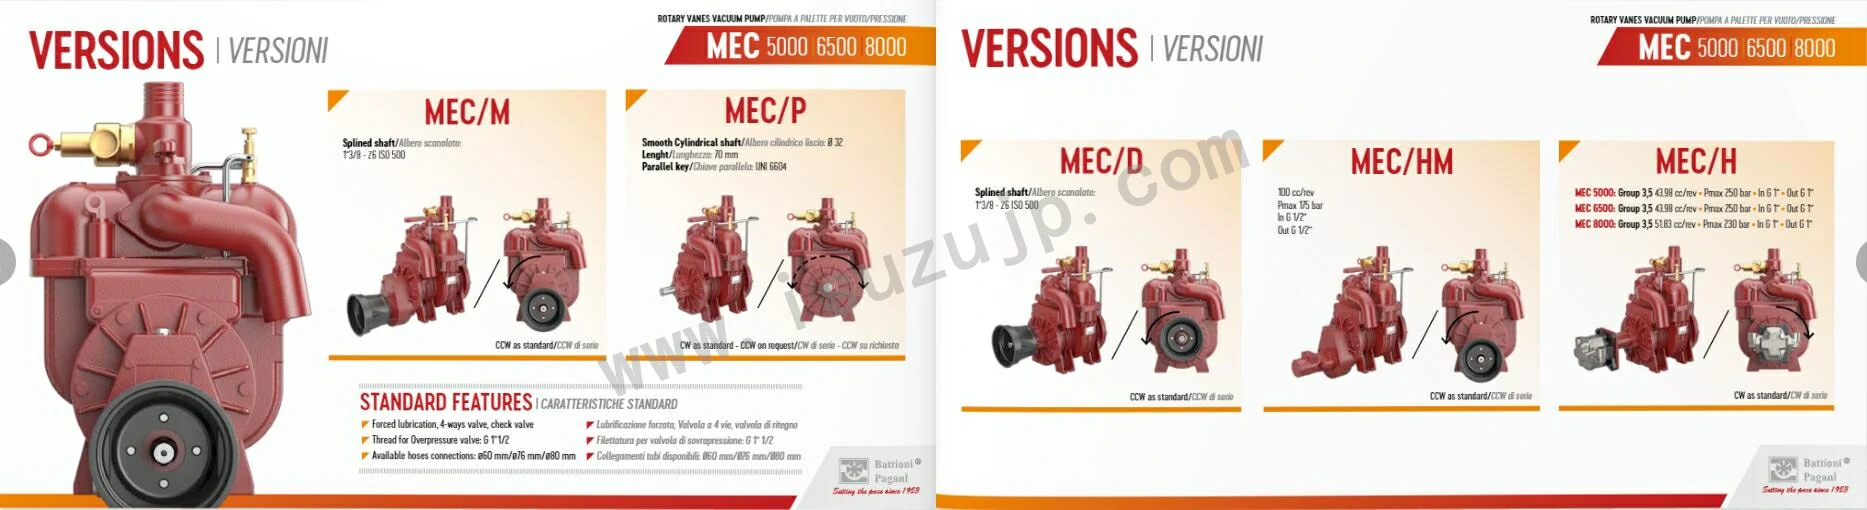 BATTIONI PAGANI MEC 1000-8000 Vacuum Pump Instructions 5